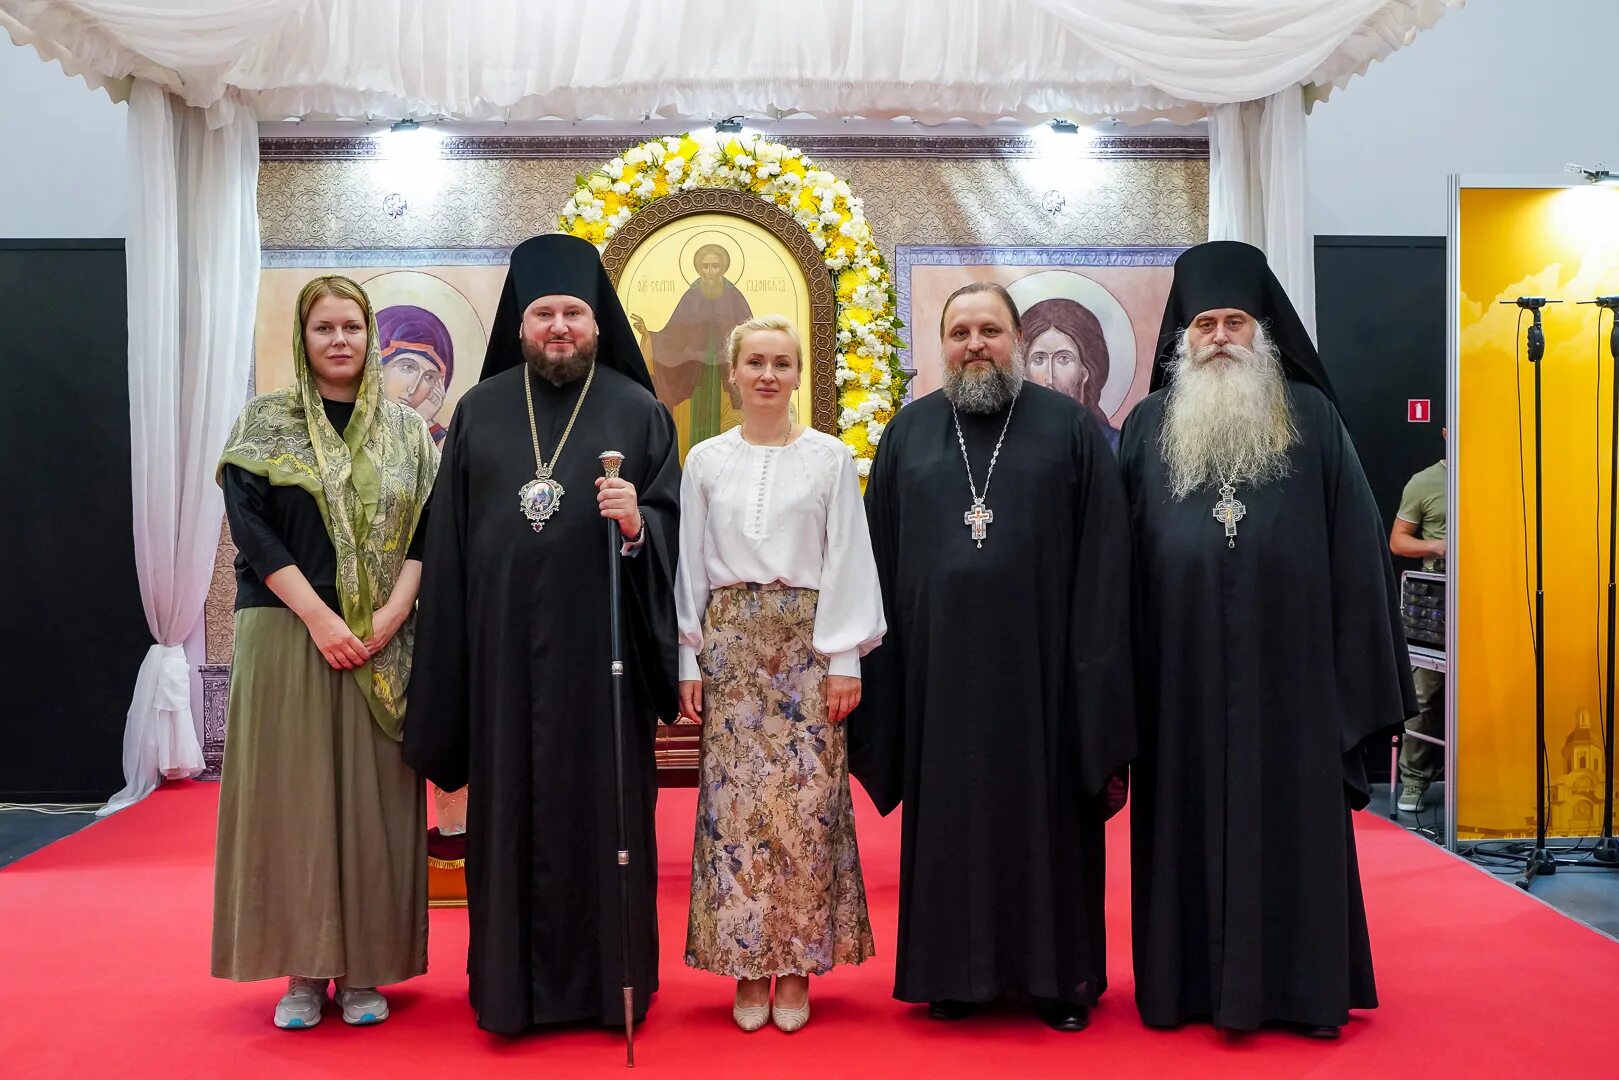 Православная ярмарка в Нижнем Новгороде в 2022 году. Православная ярмарка в Нижнем. Православная ярмарка в Нижнем Новгороде. Где проходит ярмарка православная в нижнем новгороде